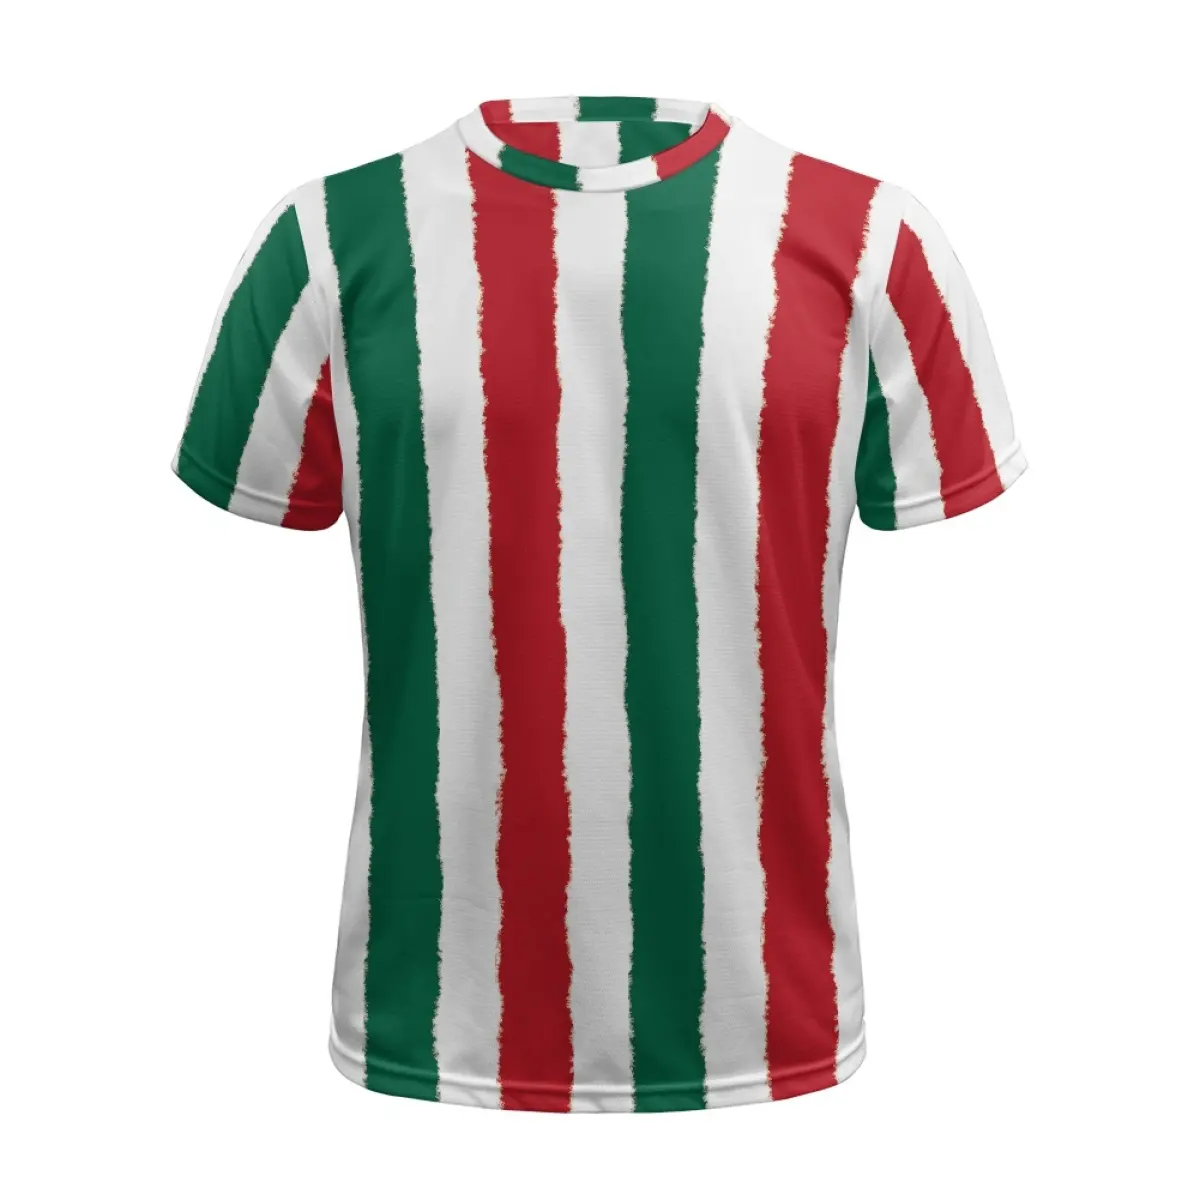 Vente en gros d'uniformes de football de l'équipe nationale mexicaine à bas prix drapeau personnalisé conception hommes maillot imprimé à la demande chemise de sublimation